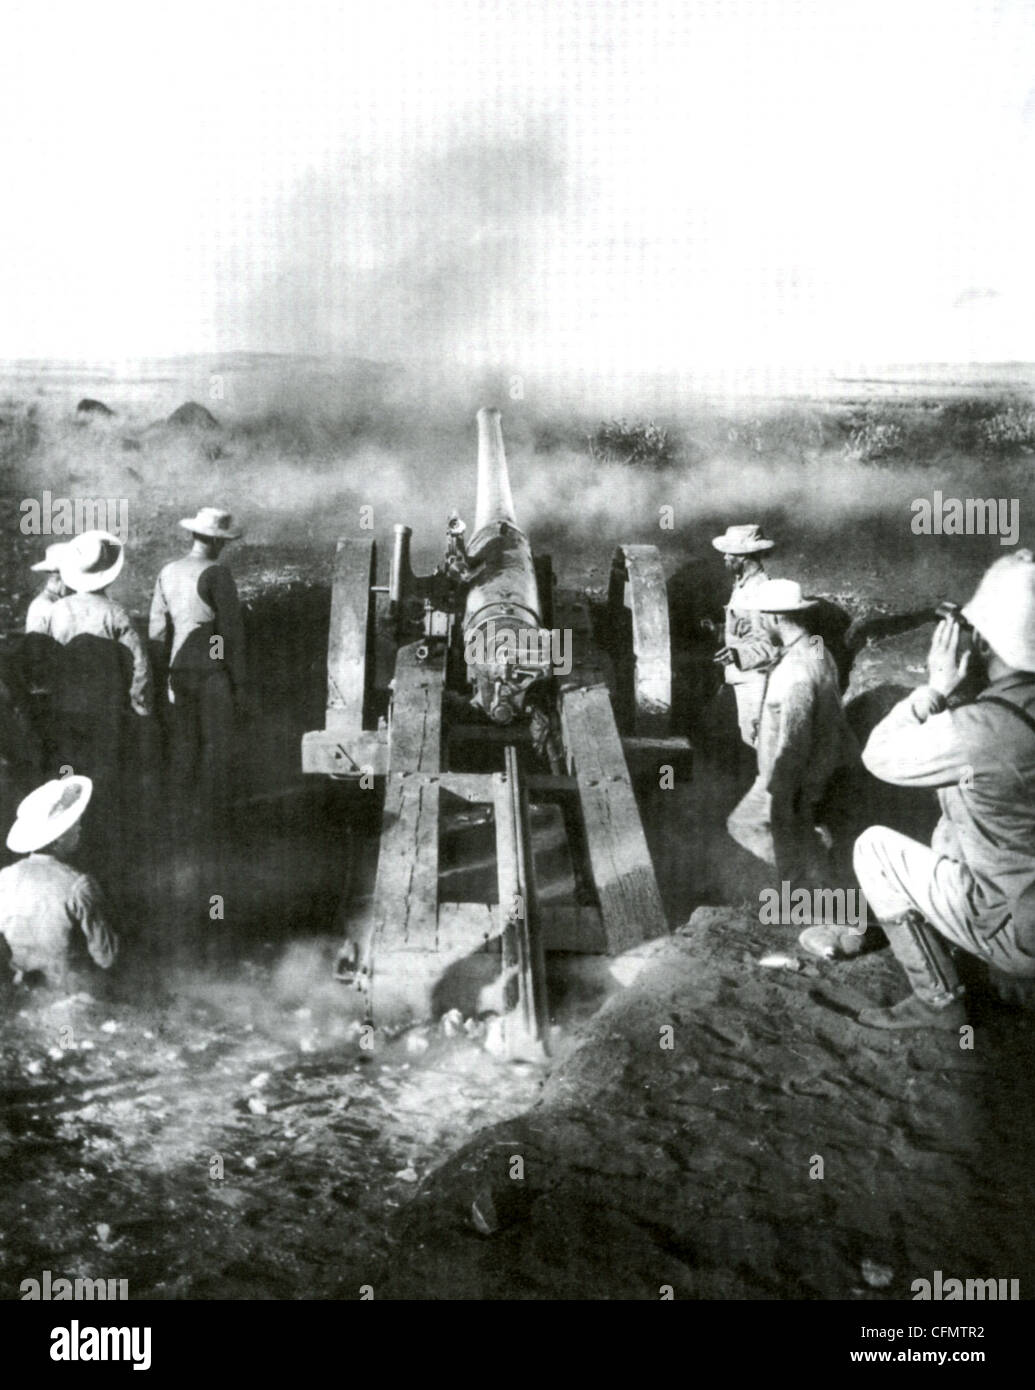 BOER Krieg 4,7 Zoll Marinegeschütz Brände an Boer Positionen bei Magersfontein im Dezember 1899. Beobachter im richtigen beobachten Fall des Schusses. Stockfoto